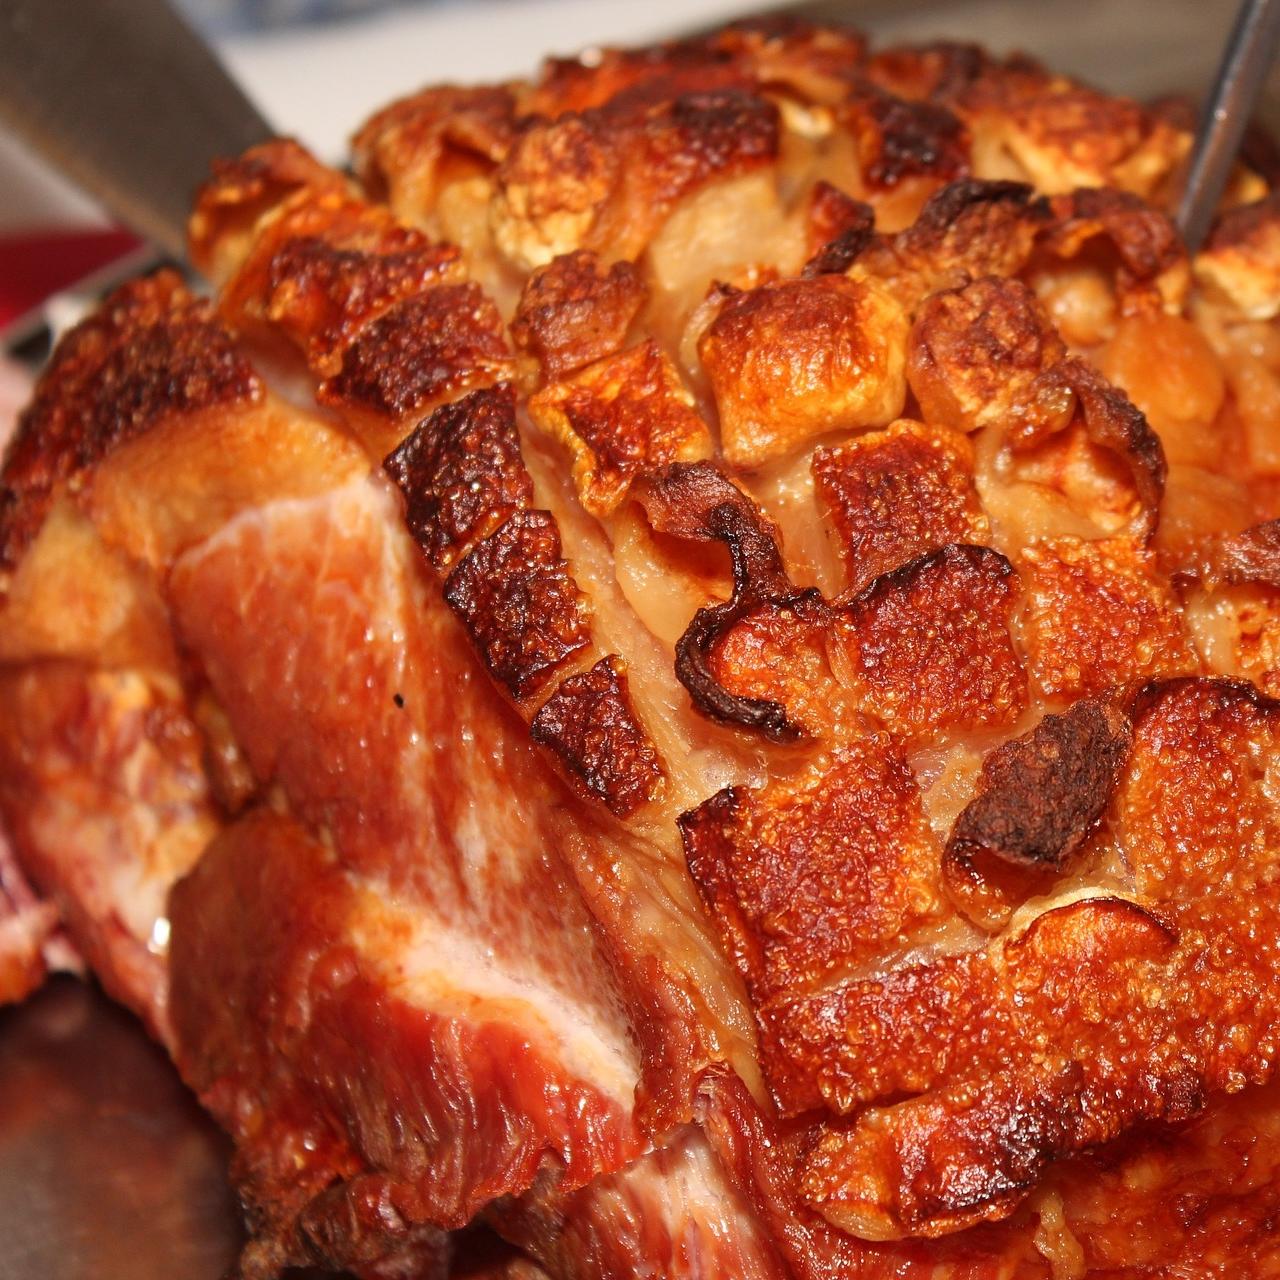 A roasted shoulder of pork